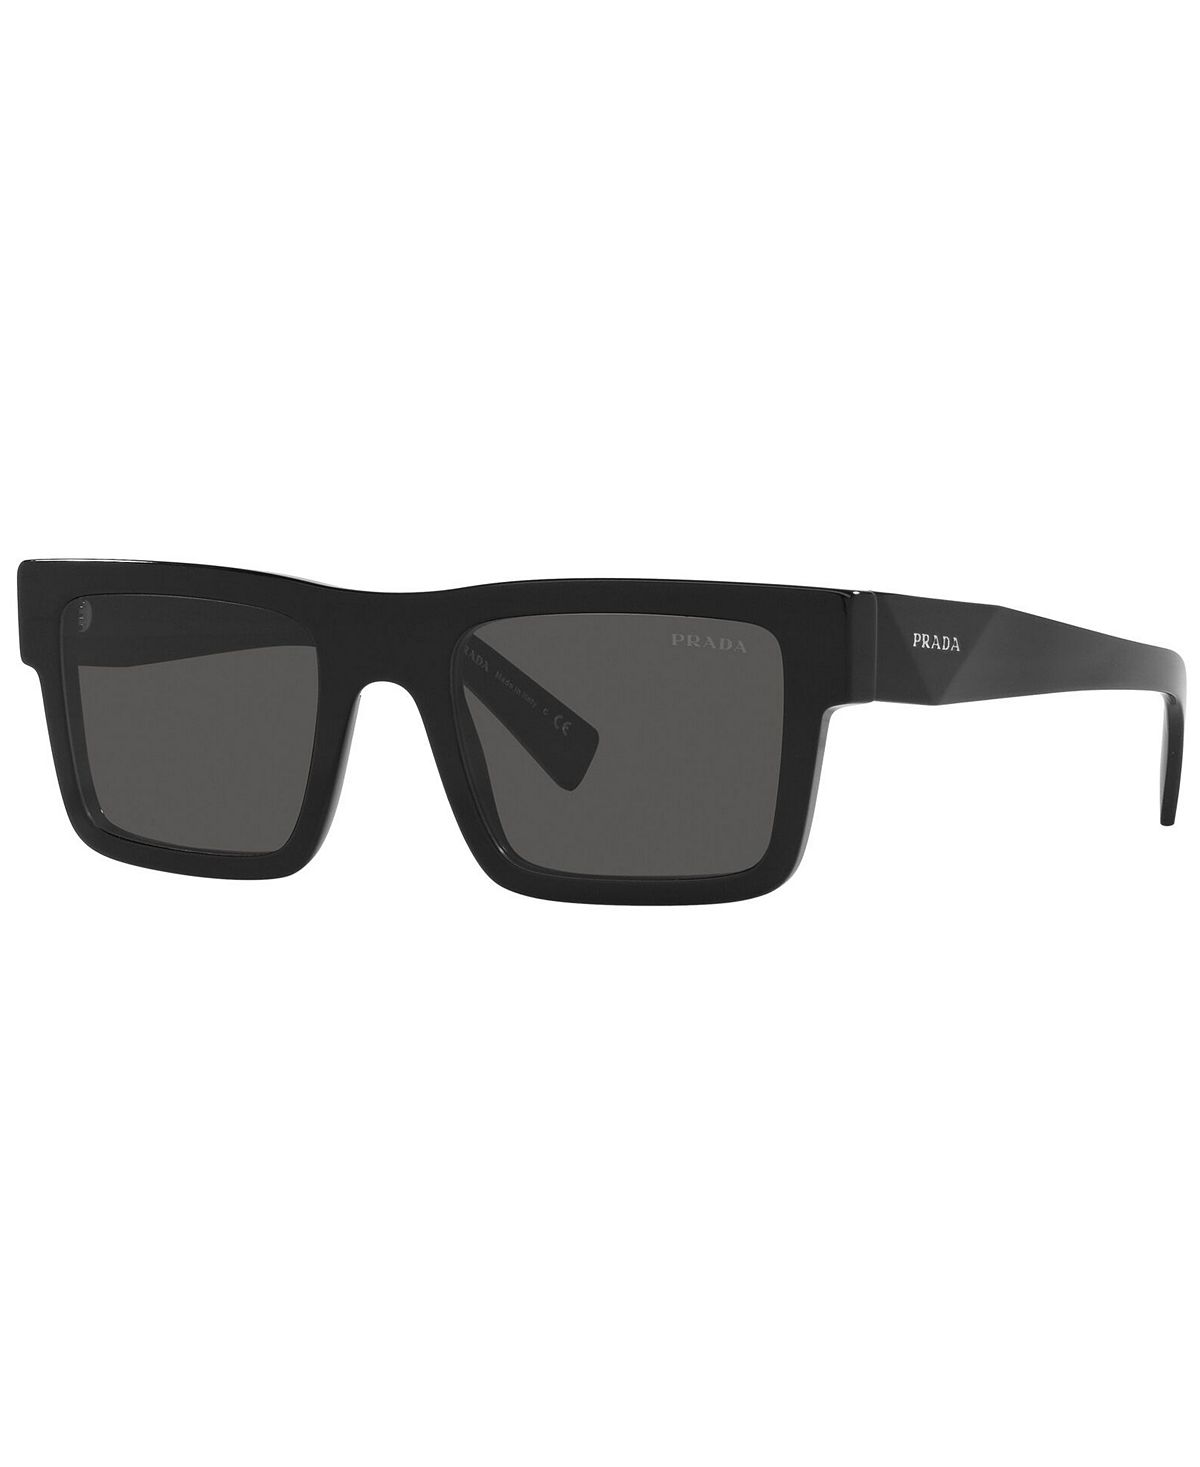 Мужские солнцезащитные очки PR 19WS PRADA